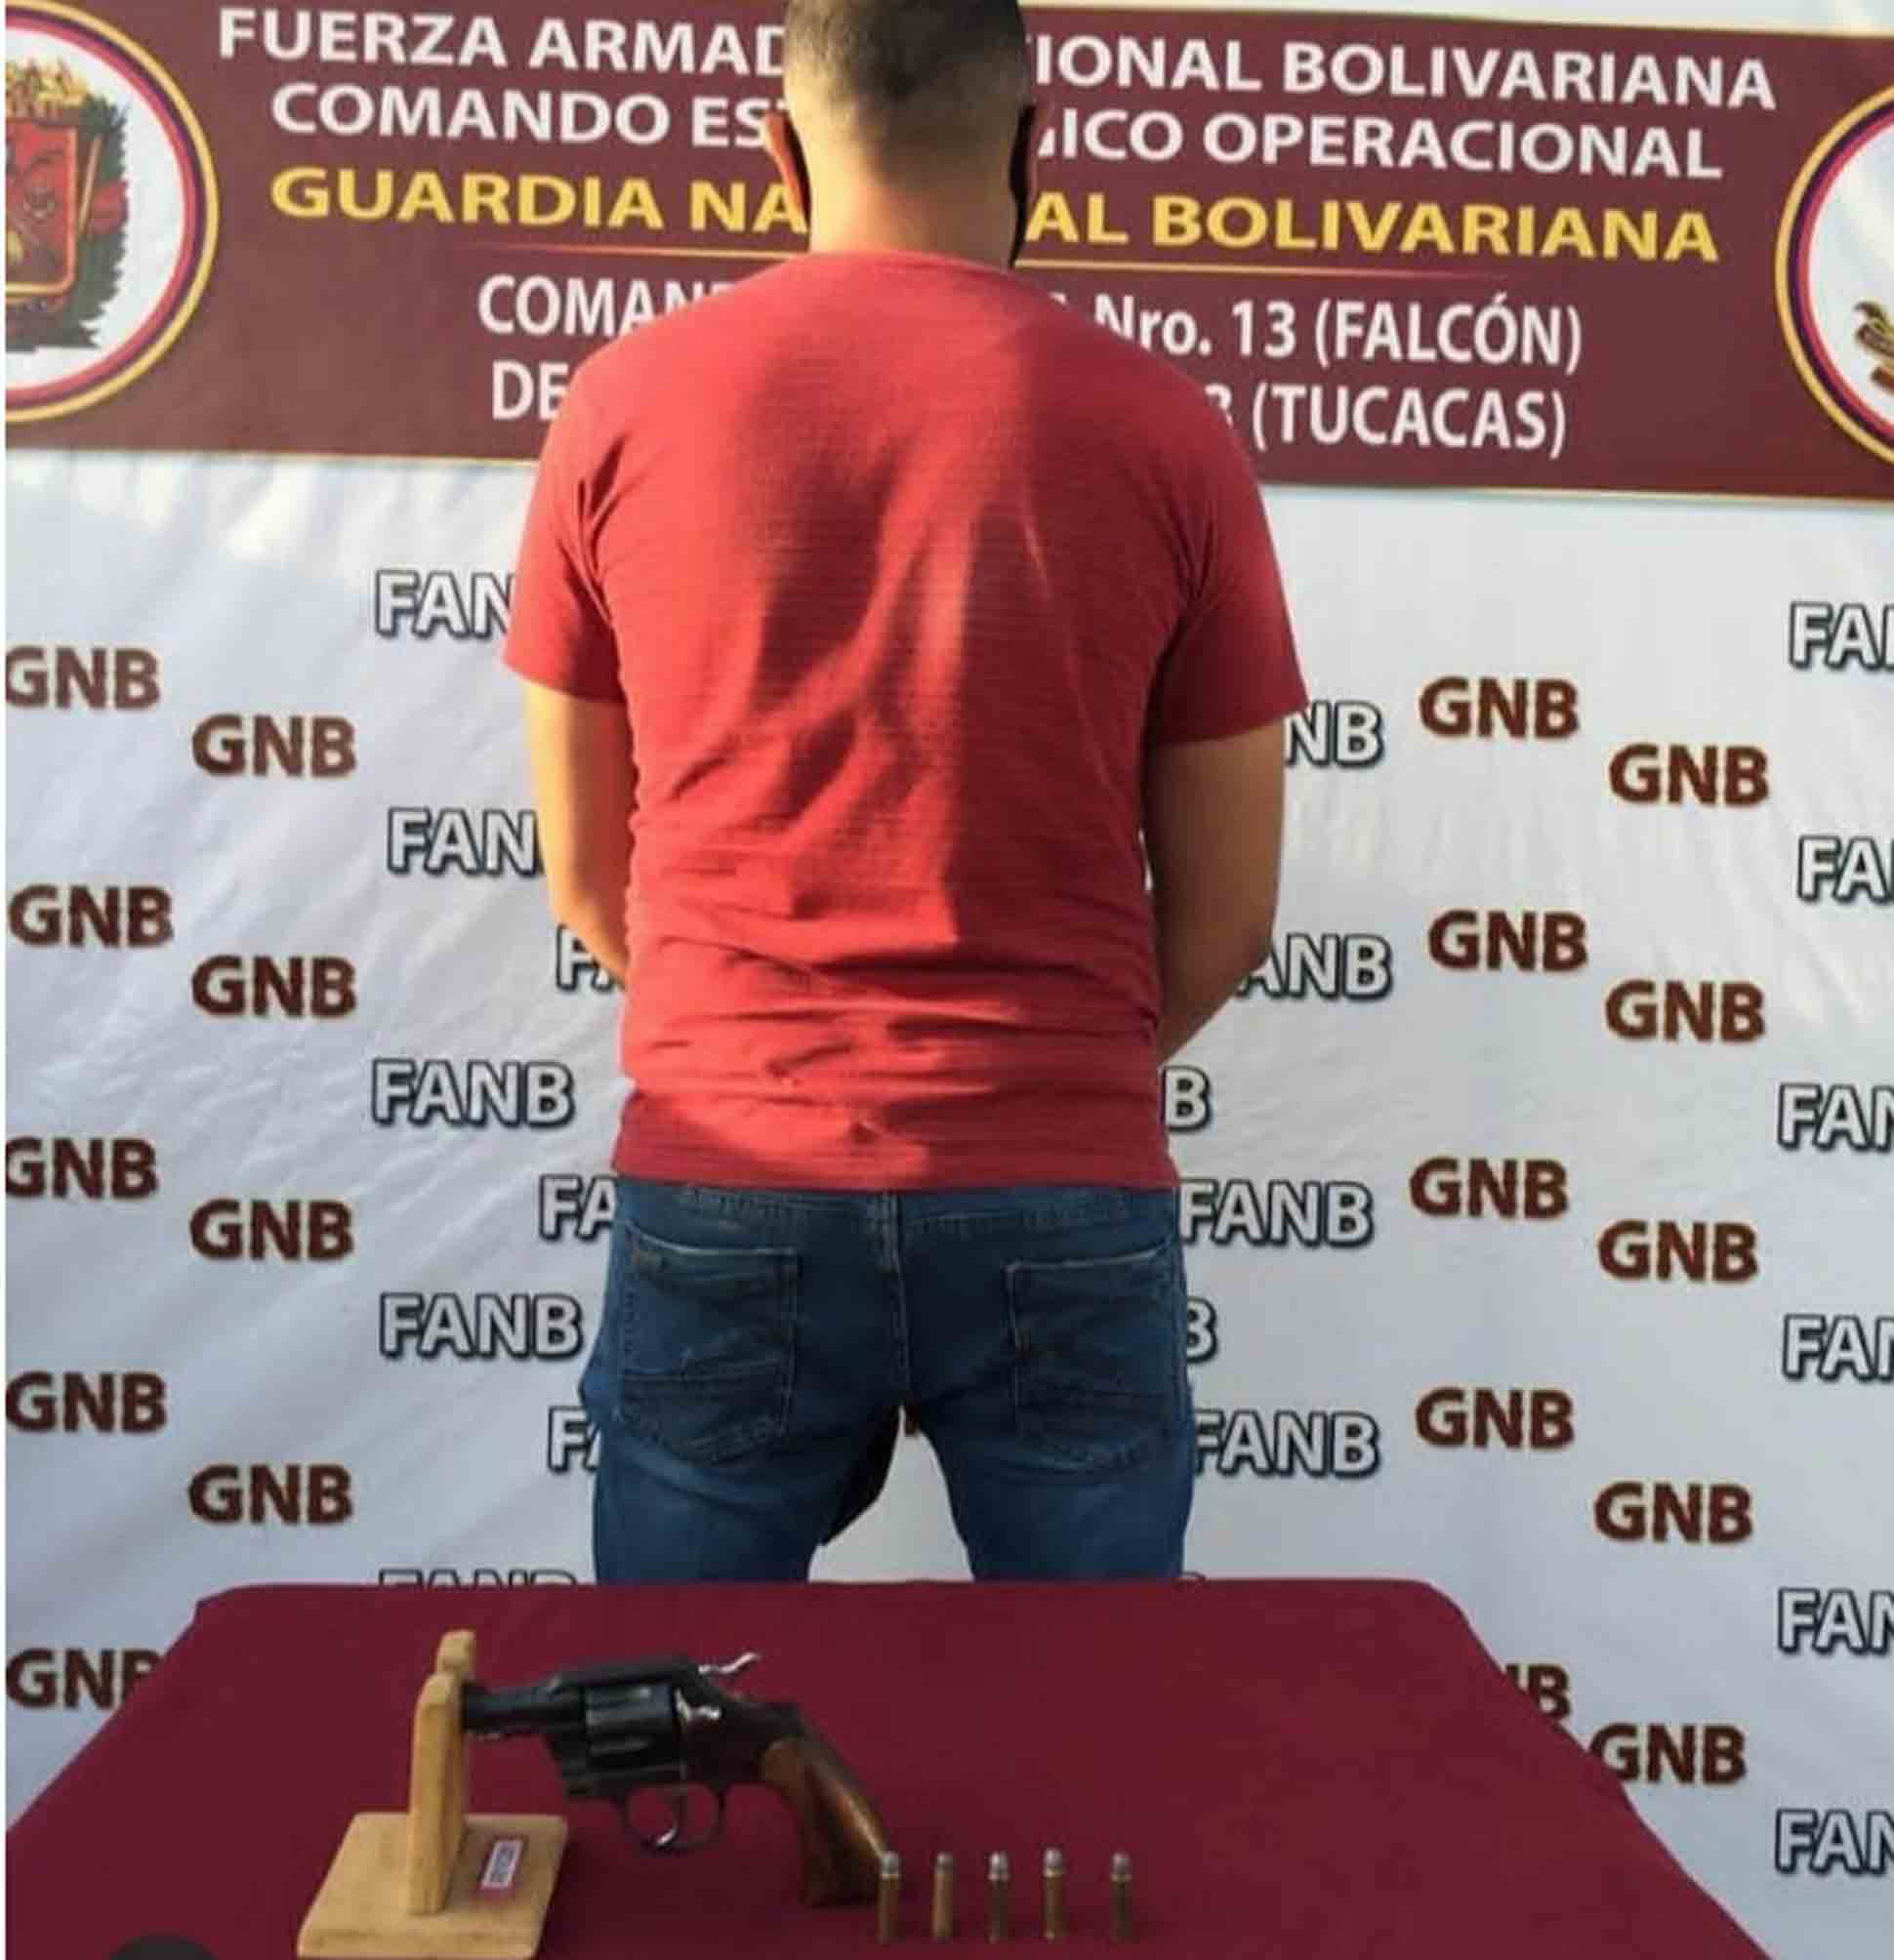  GNB desarma y detiene a costeño en Tucacas